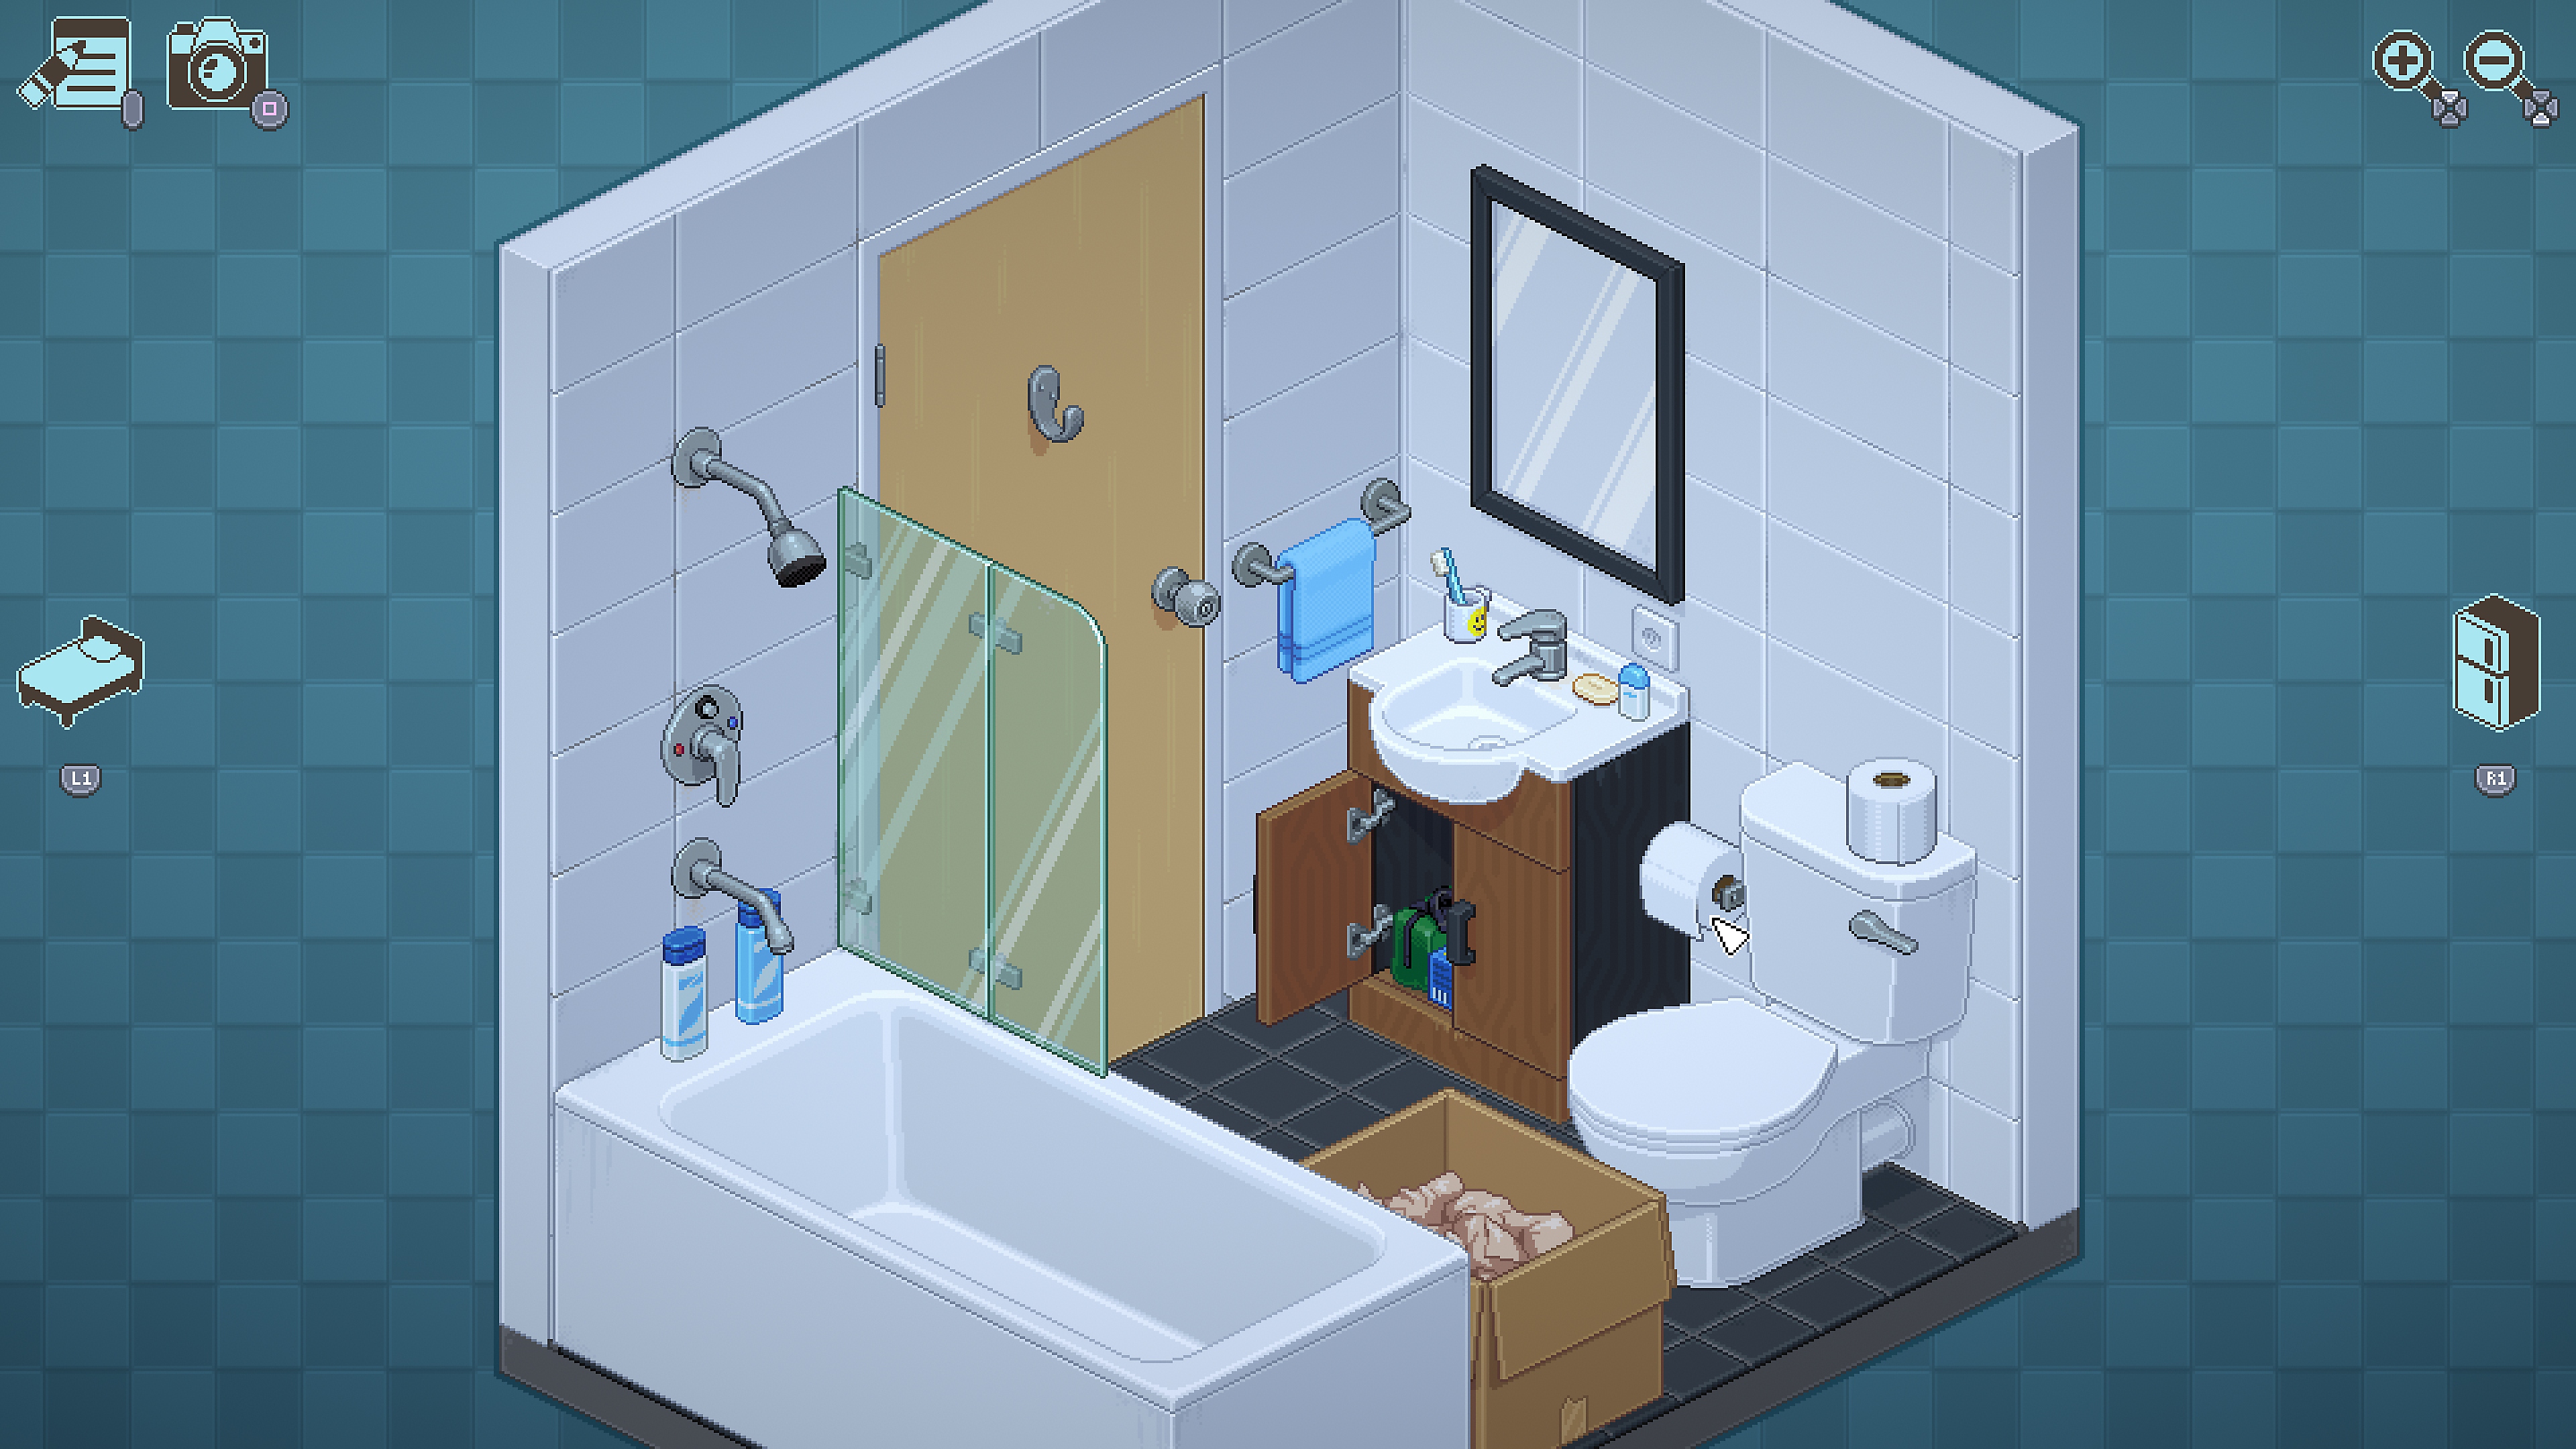 Unpacking-képernyőkép egy fürdőszobabelsővel